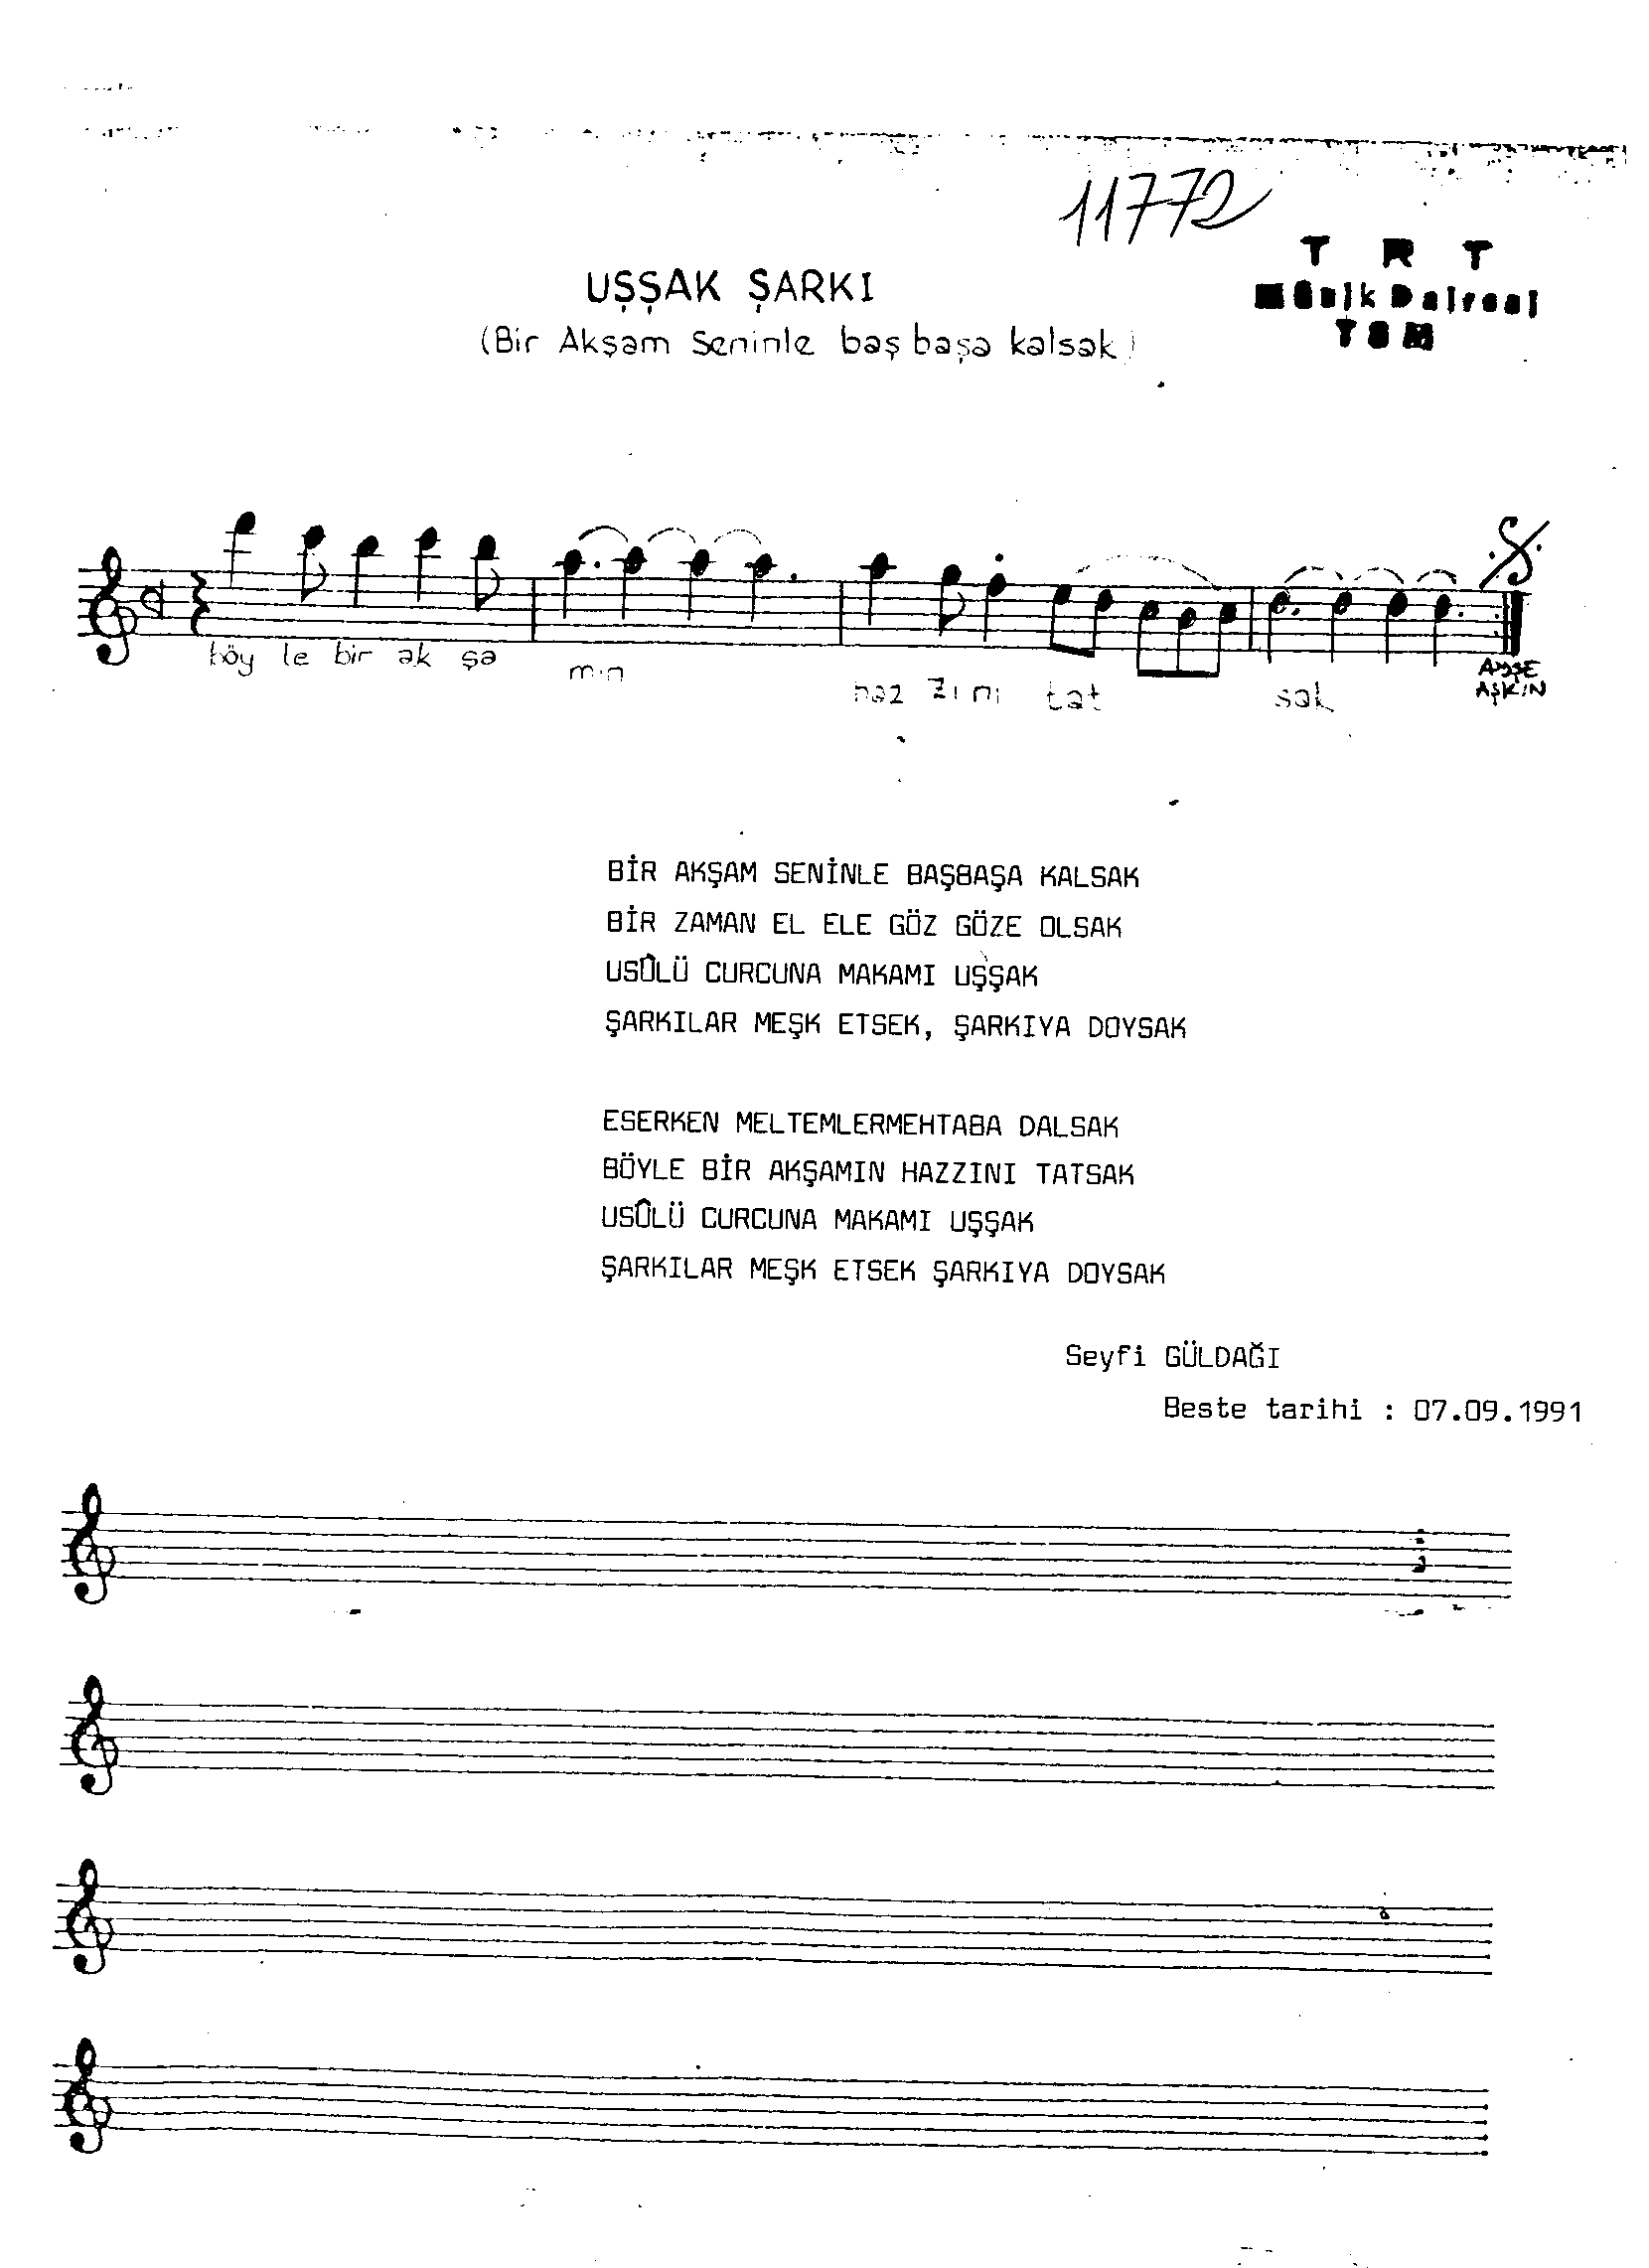 Uşşak - Şarkı - Seyfi Güldağı - Sayfa 2